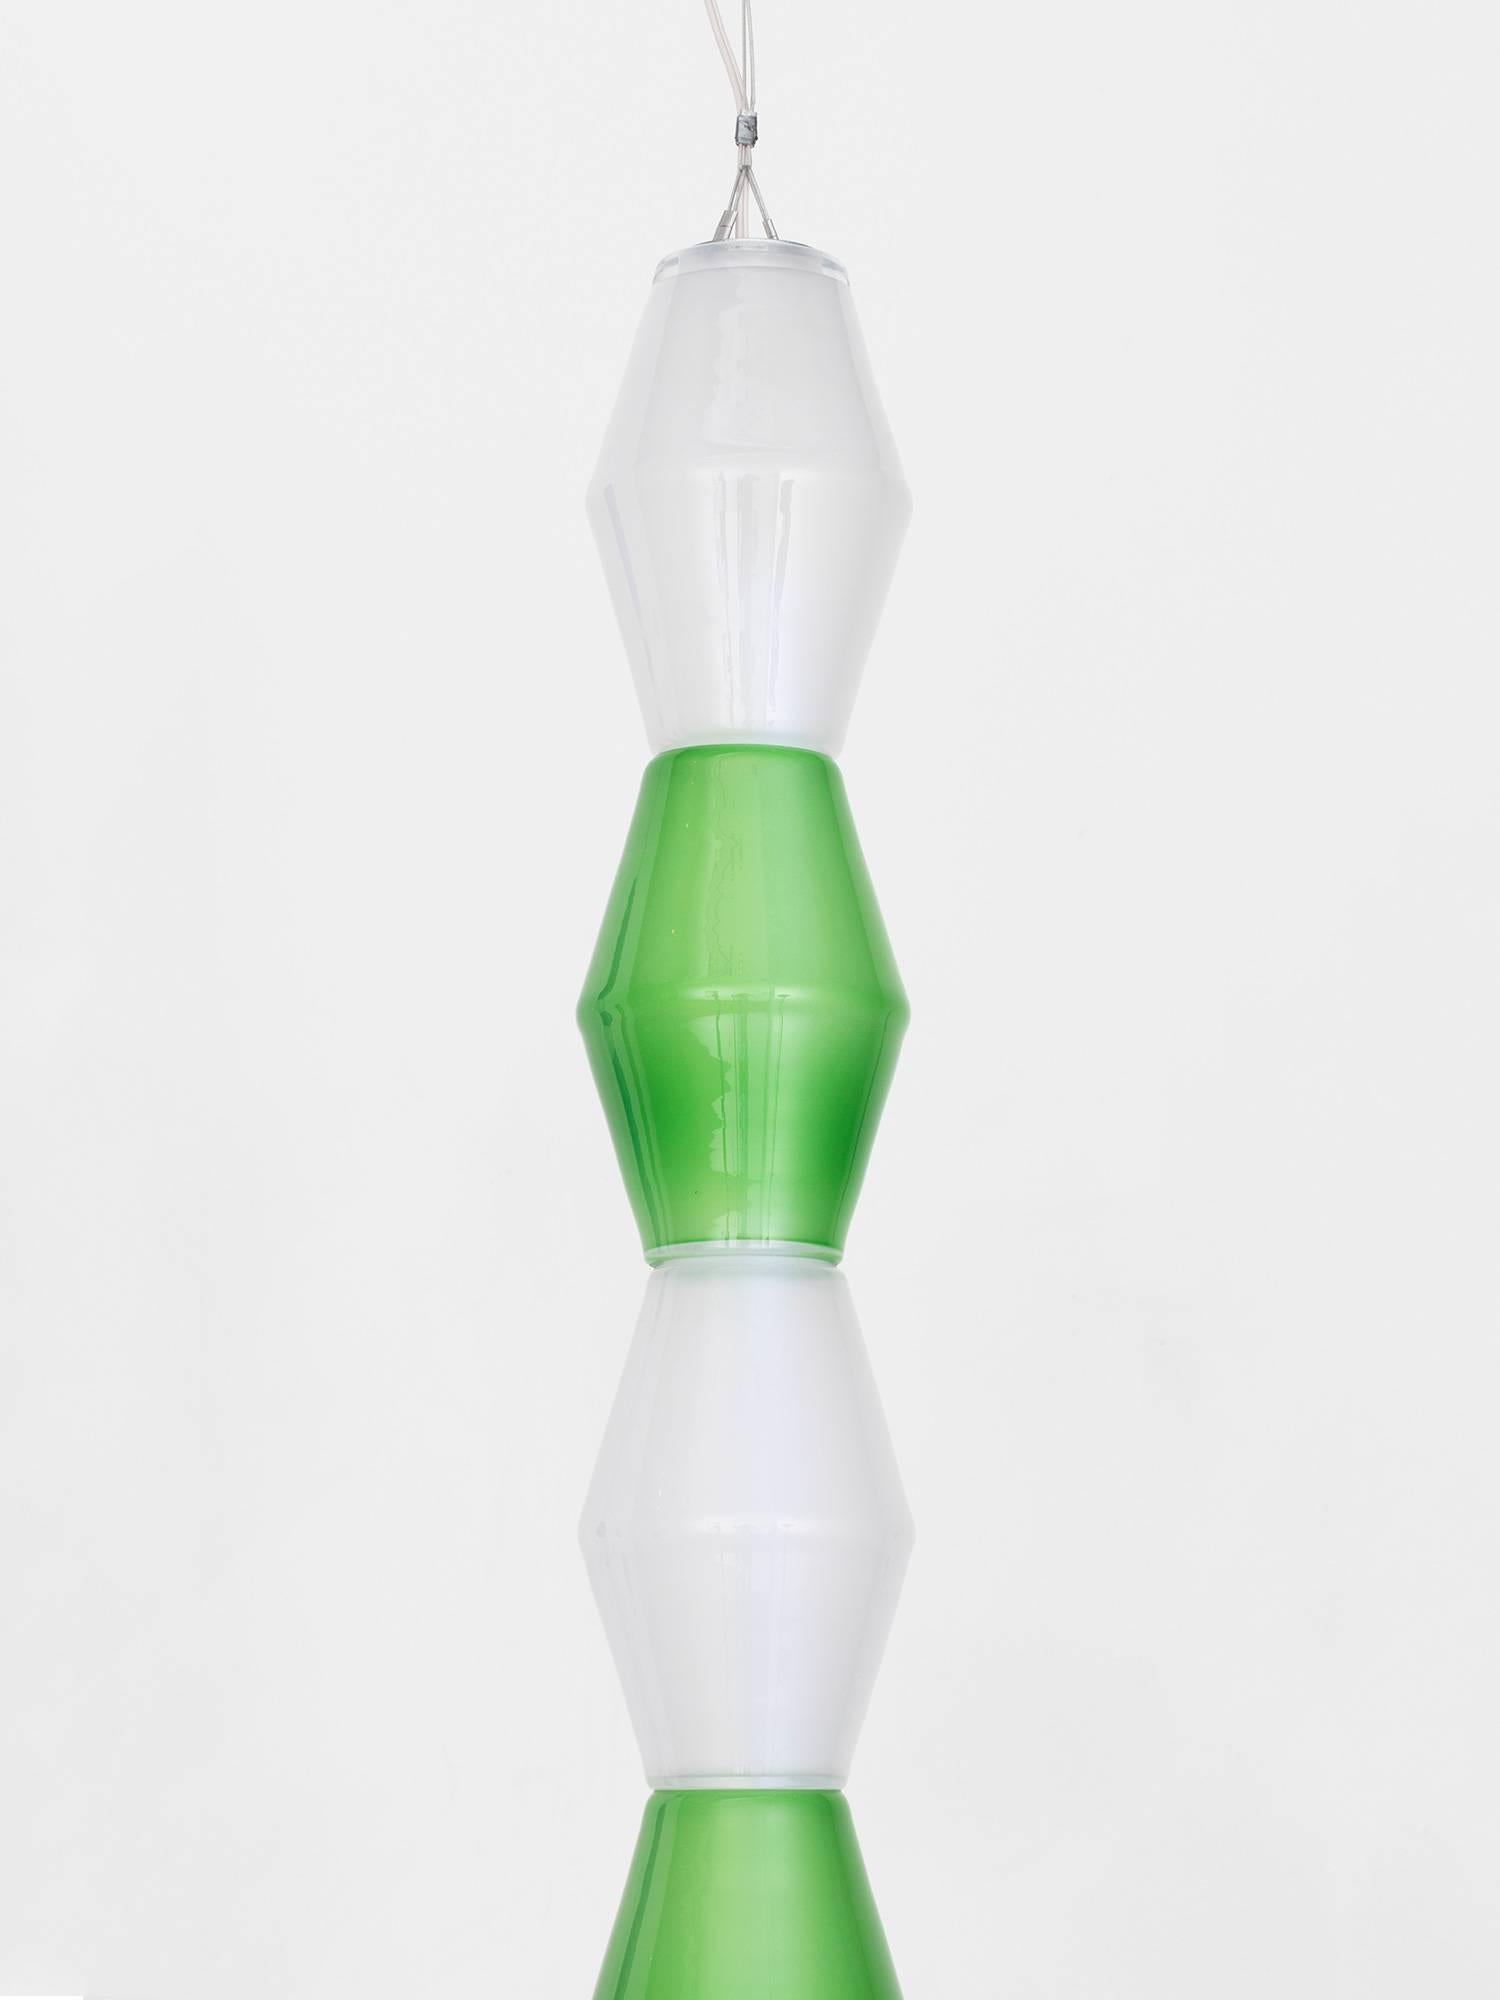 Suspension en verre totémique fabriquée à la main par l'artiste/architecte norvégien Tron Meyer. La lampe est composée de onze formes en verre vert et blanc enroulées autour d'un noyau de LED, qui ont été soufflées à la main dans un moule en bois